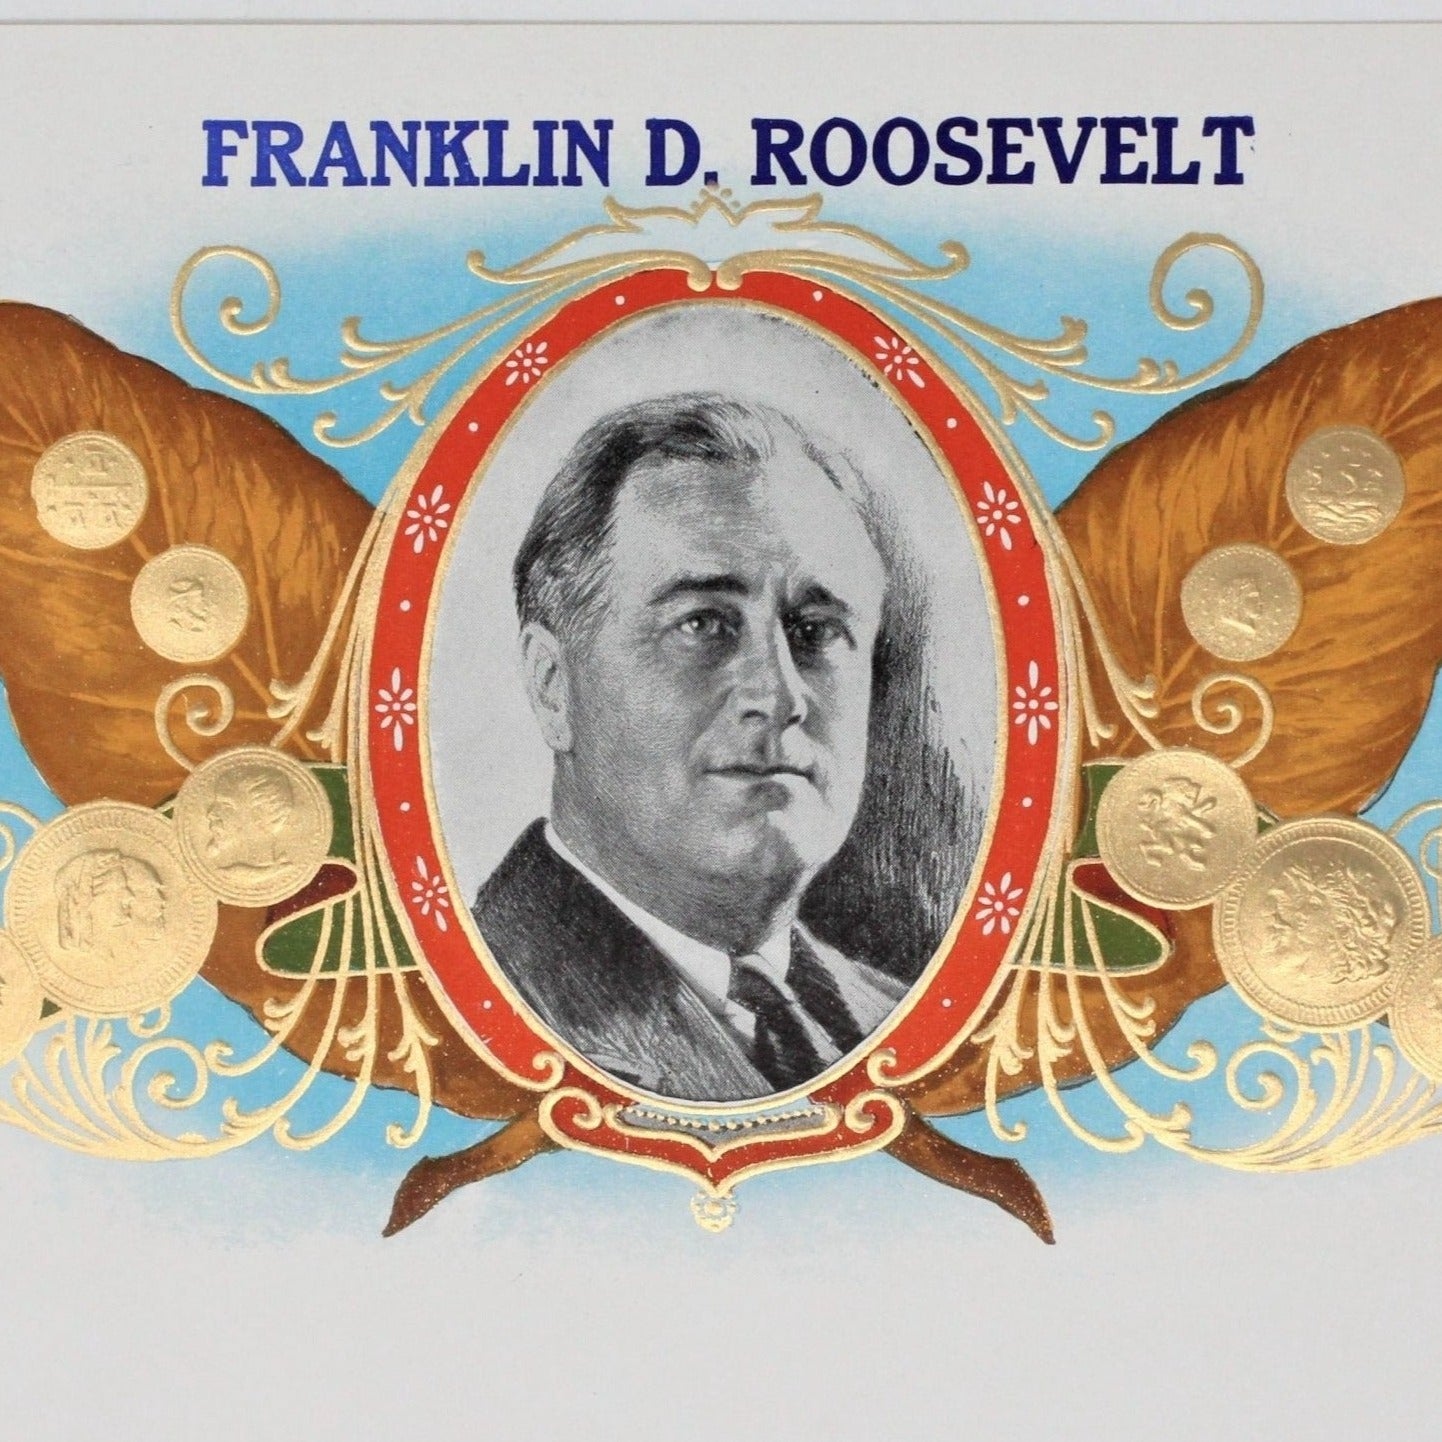 Cigar Box Label, Franklin D. Roosevelt Original Lithograph, Vintage NOS